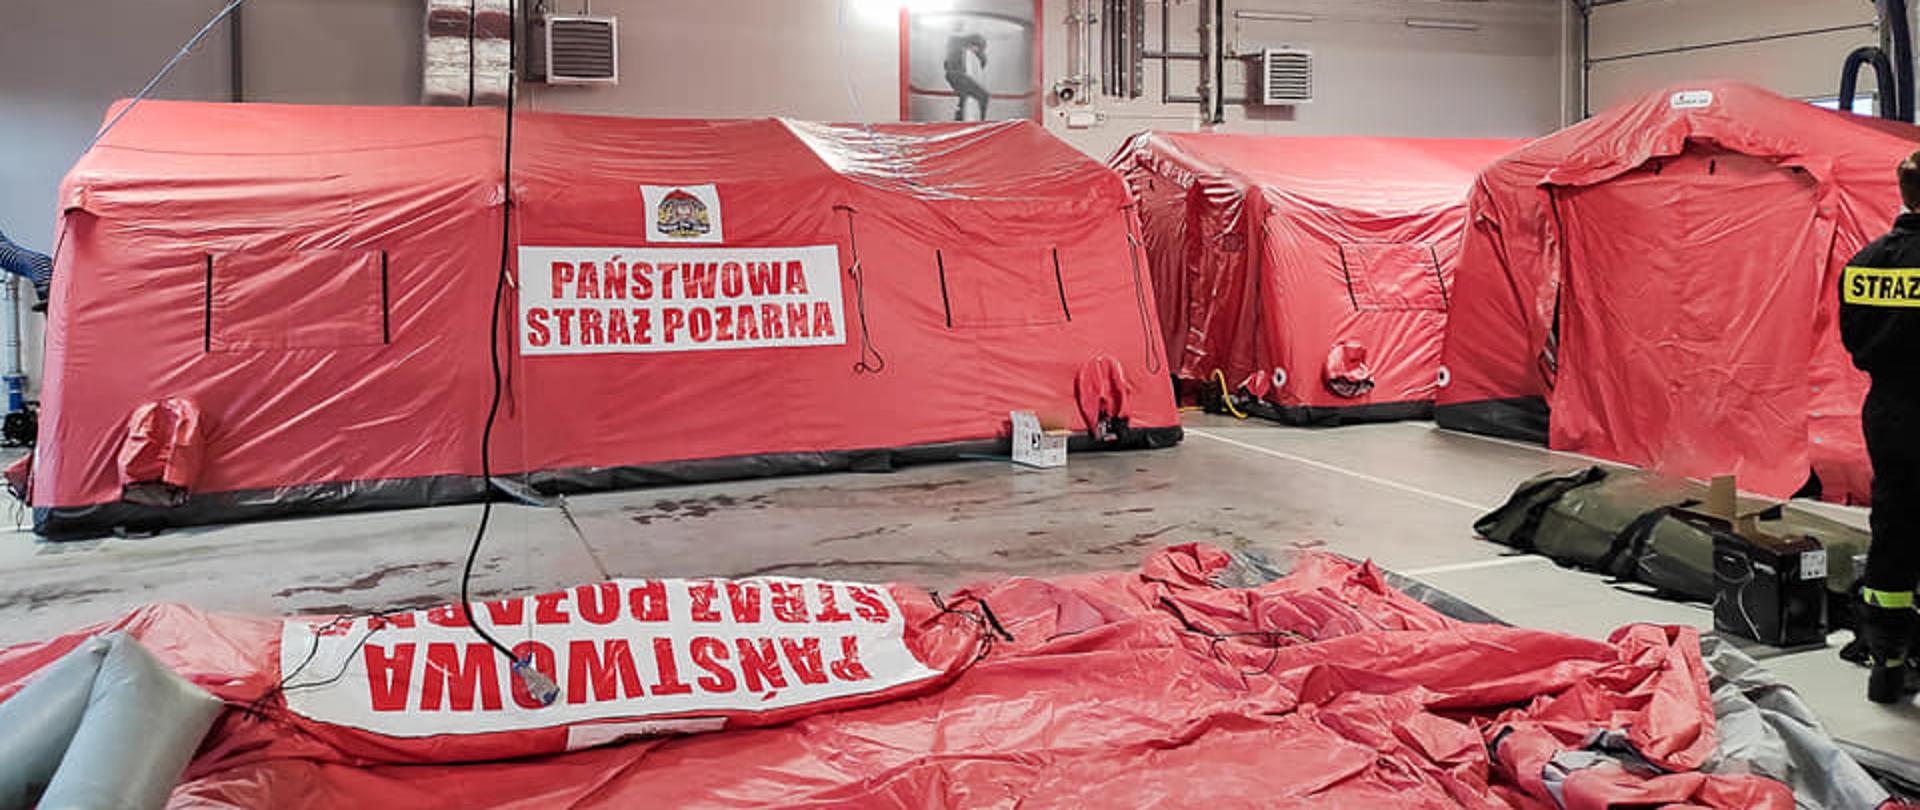 Zdjęcie przedstawia proces rozkładania nowych namiotów pneumatycznych na których znajduje się logo PSP oraz napis Państwowa Straż Pożarna. 